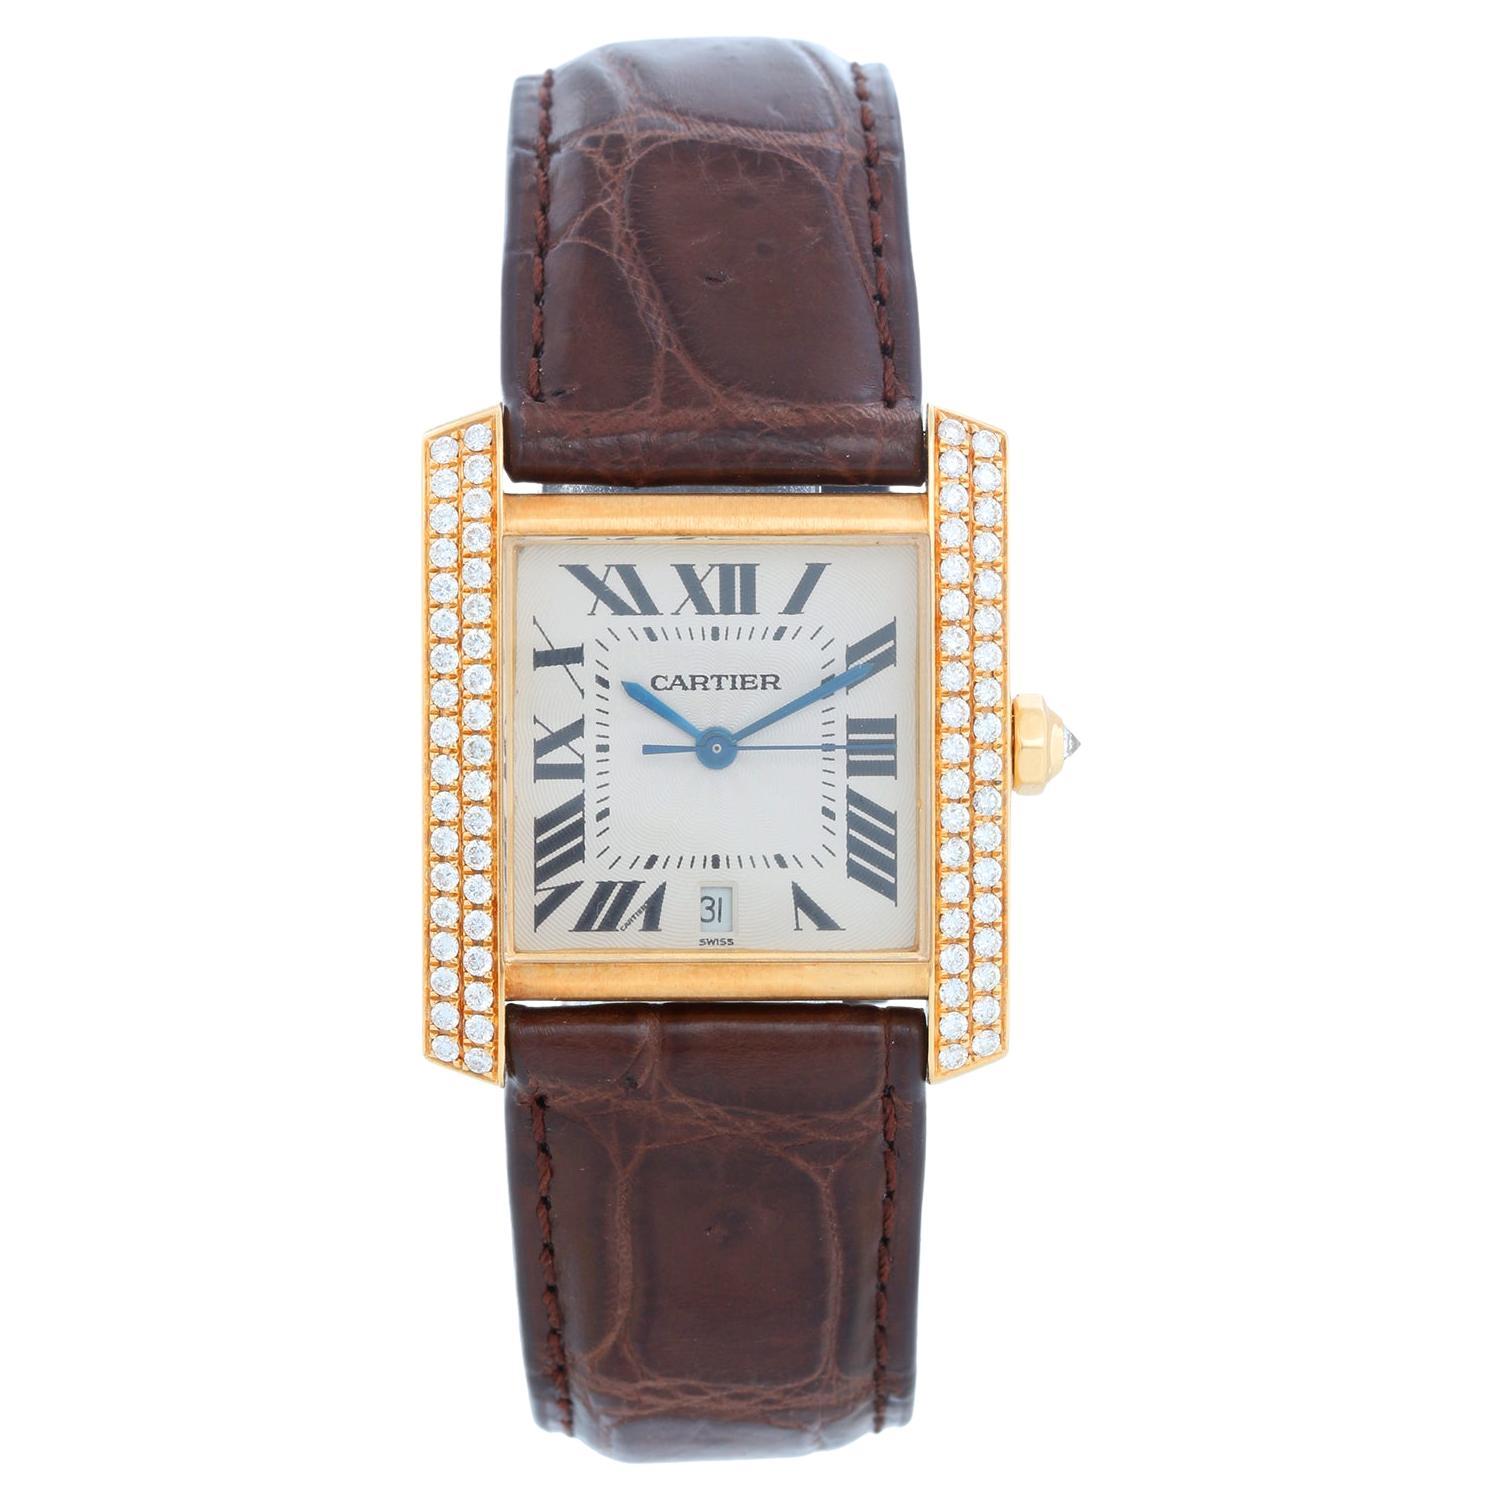 Reloj de caballero Cartier Tank Francaise de oro amarillo de 18 quilates WE1010R8 1840